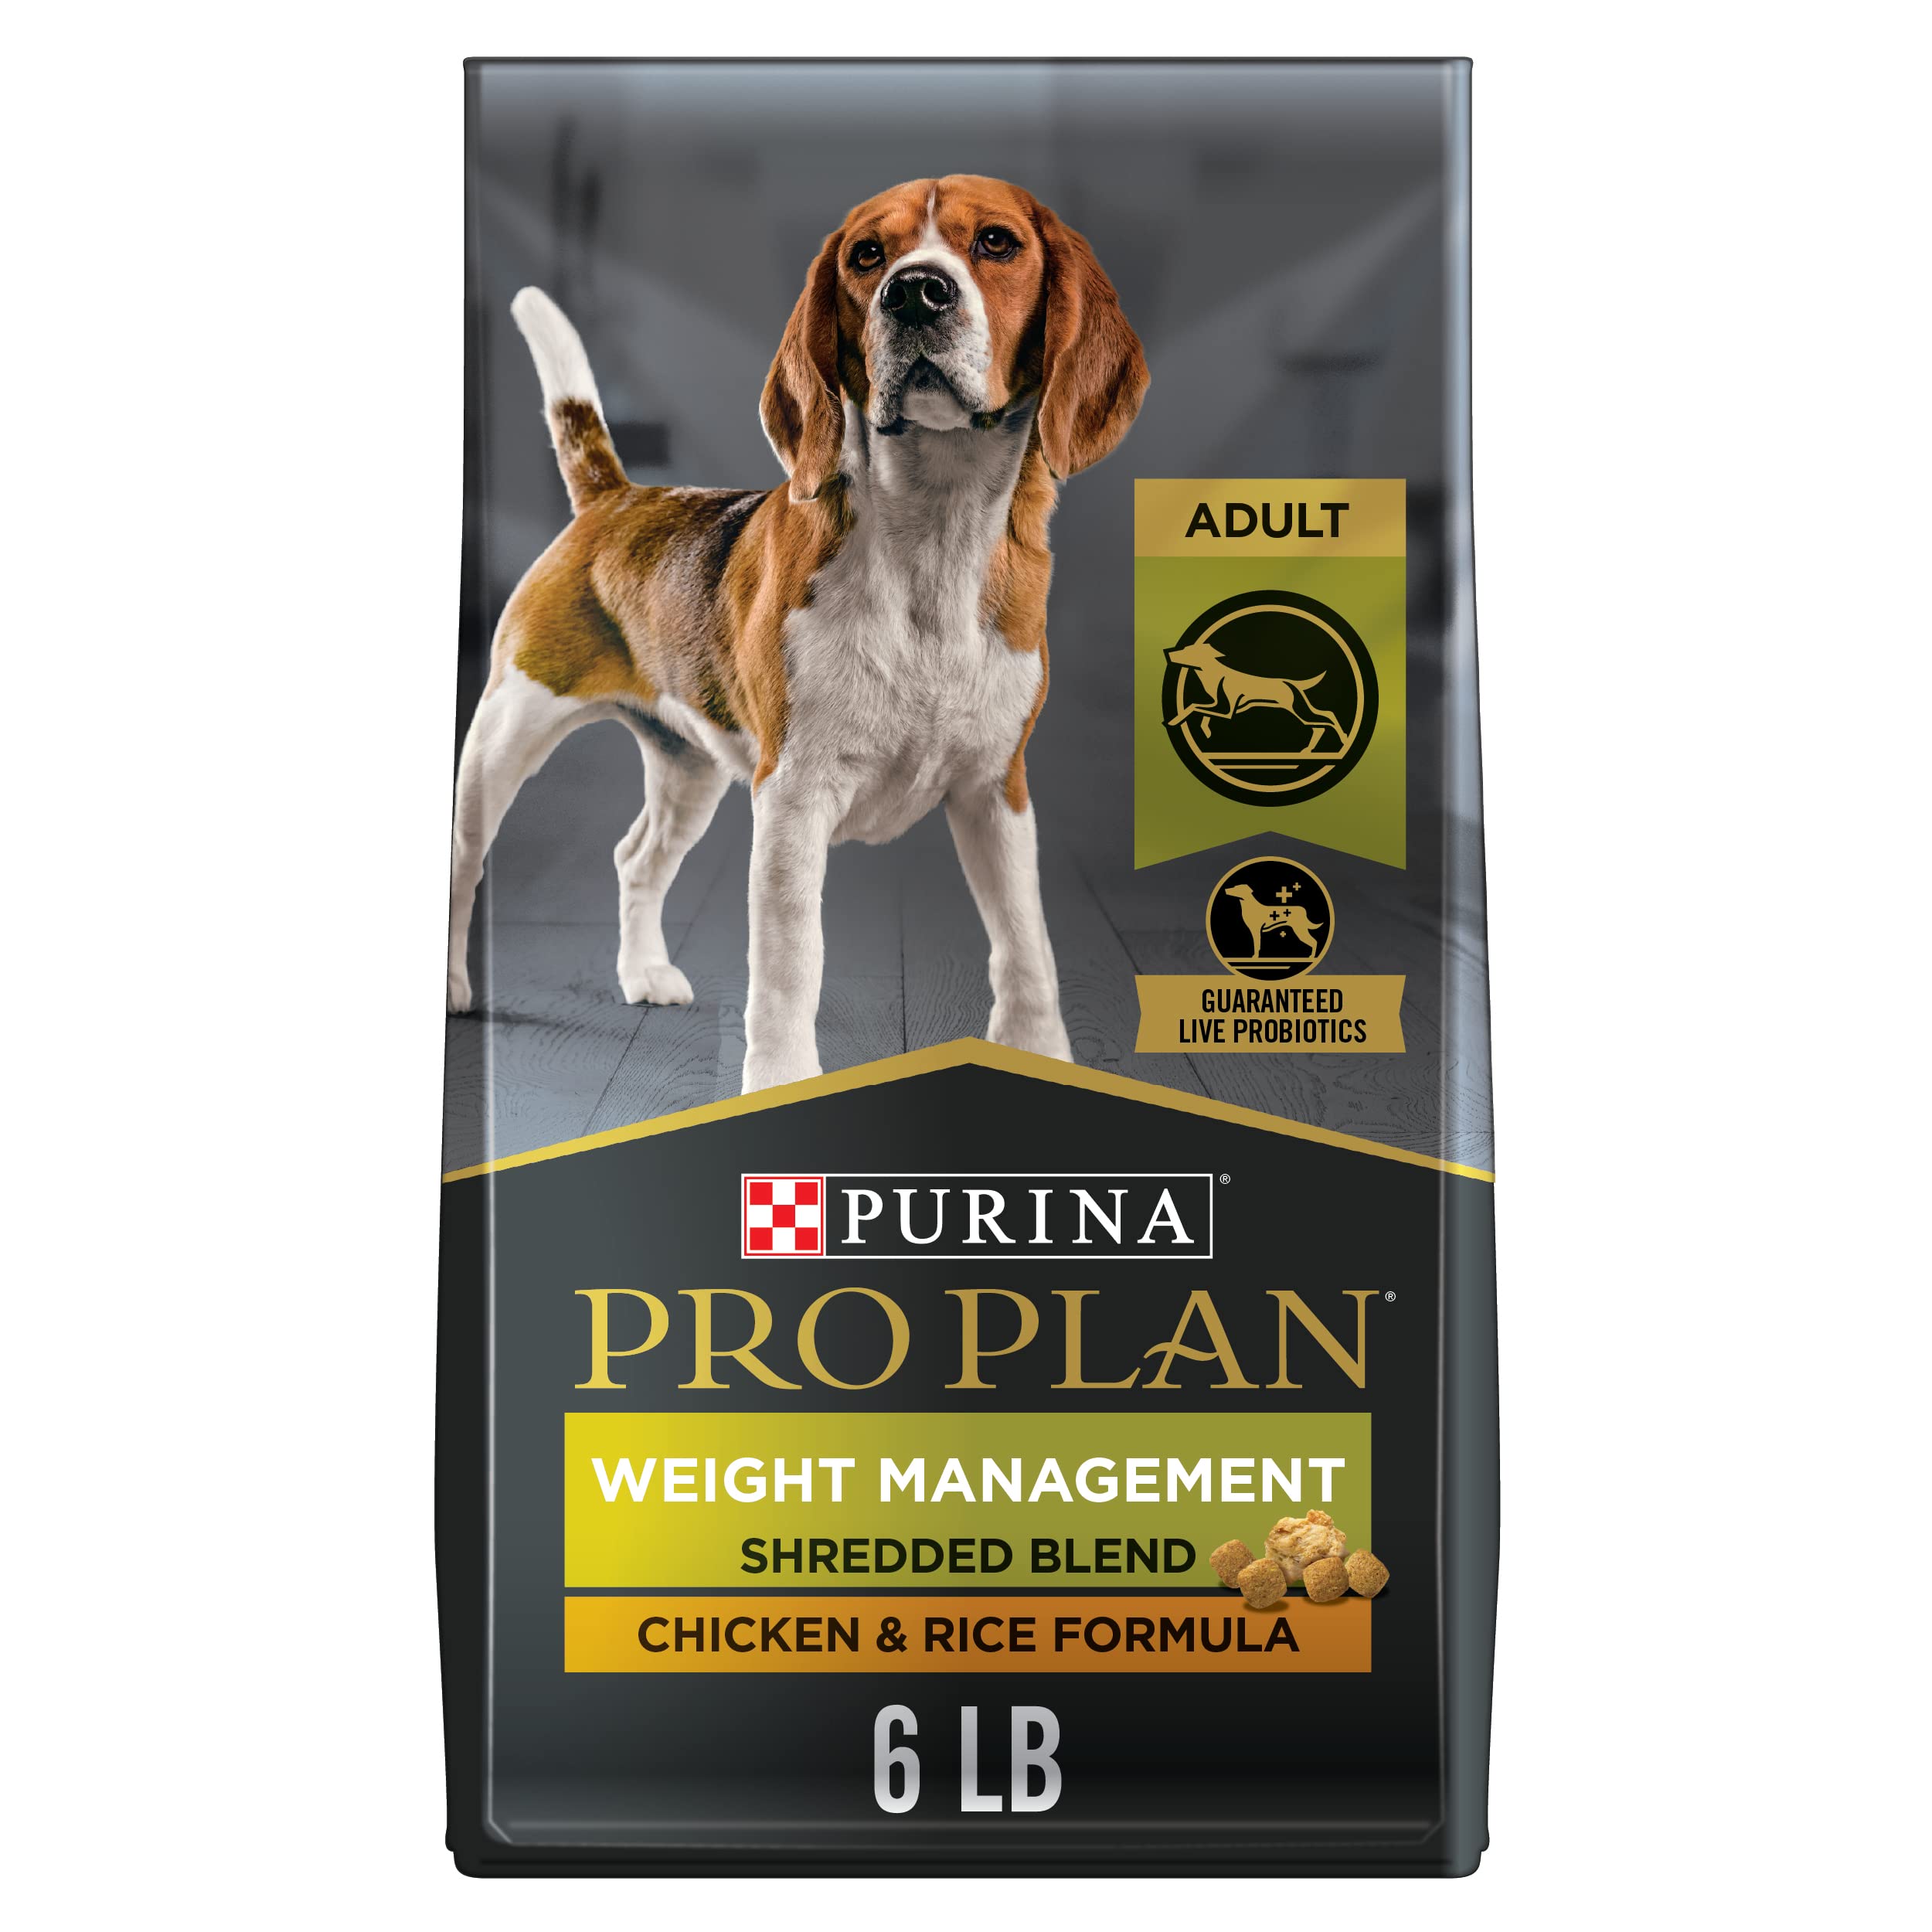  Purina वज़न प्रबंधन वयस्क सूखा कुत्ता भोजन चिकन टुकड़ों के साथ (पैकेजिंग भिन्न...